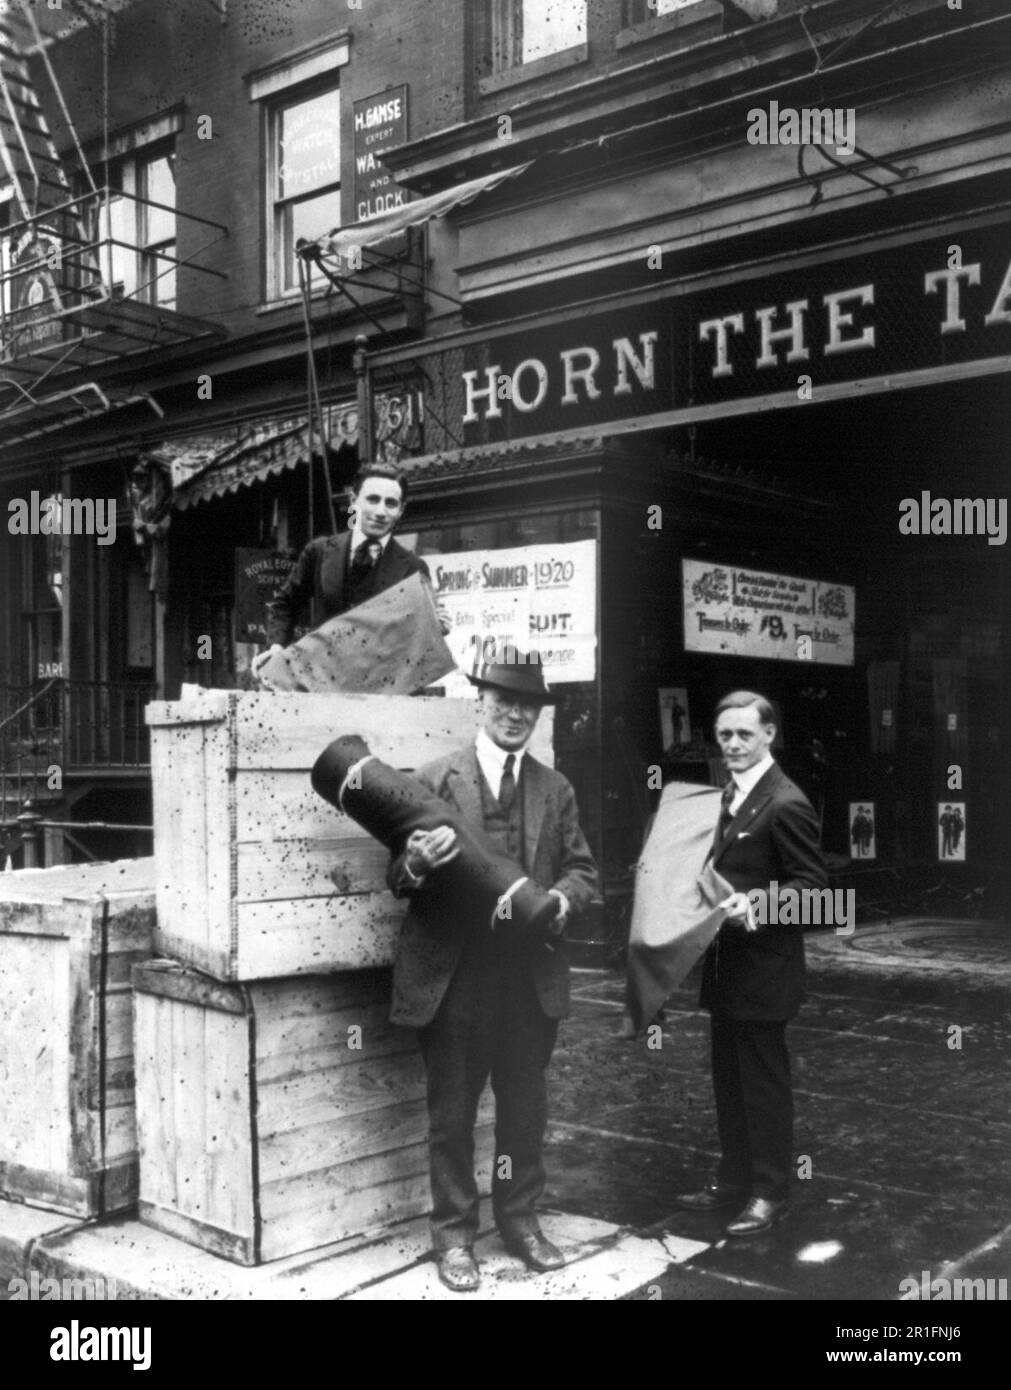 Archivfoto: Drei Männer halten Material vor dem Horn, dem Schneiderladen in Washington D.C. Ca. 1920 Stockfoto